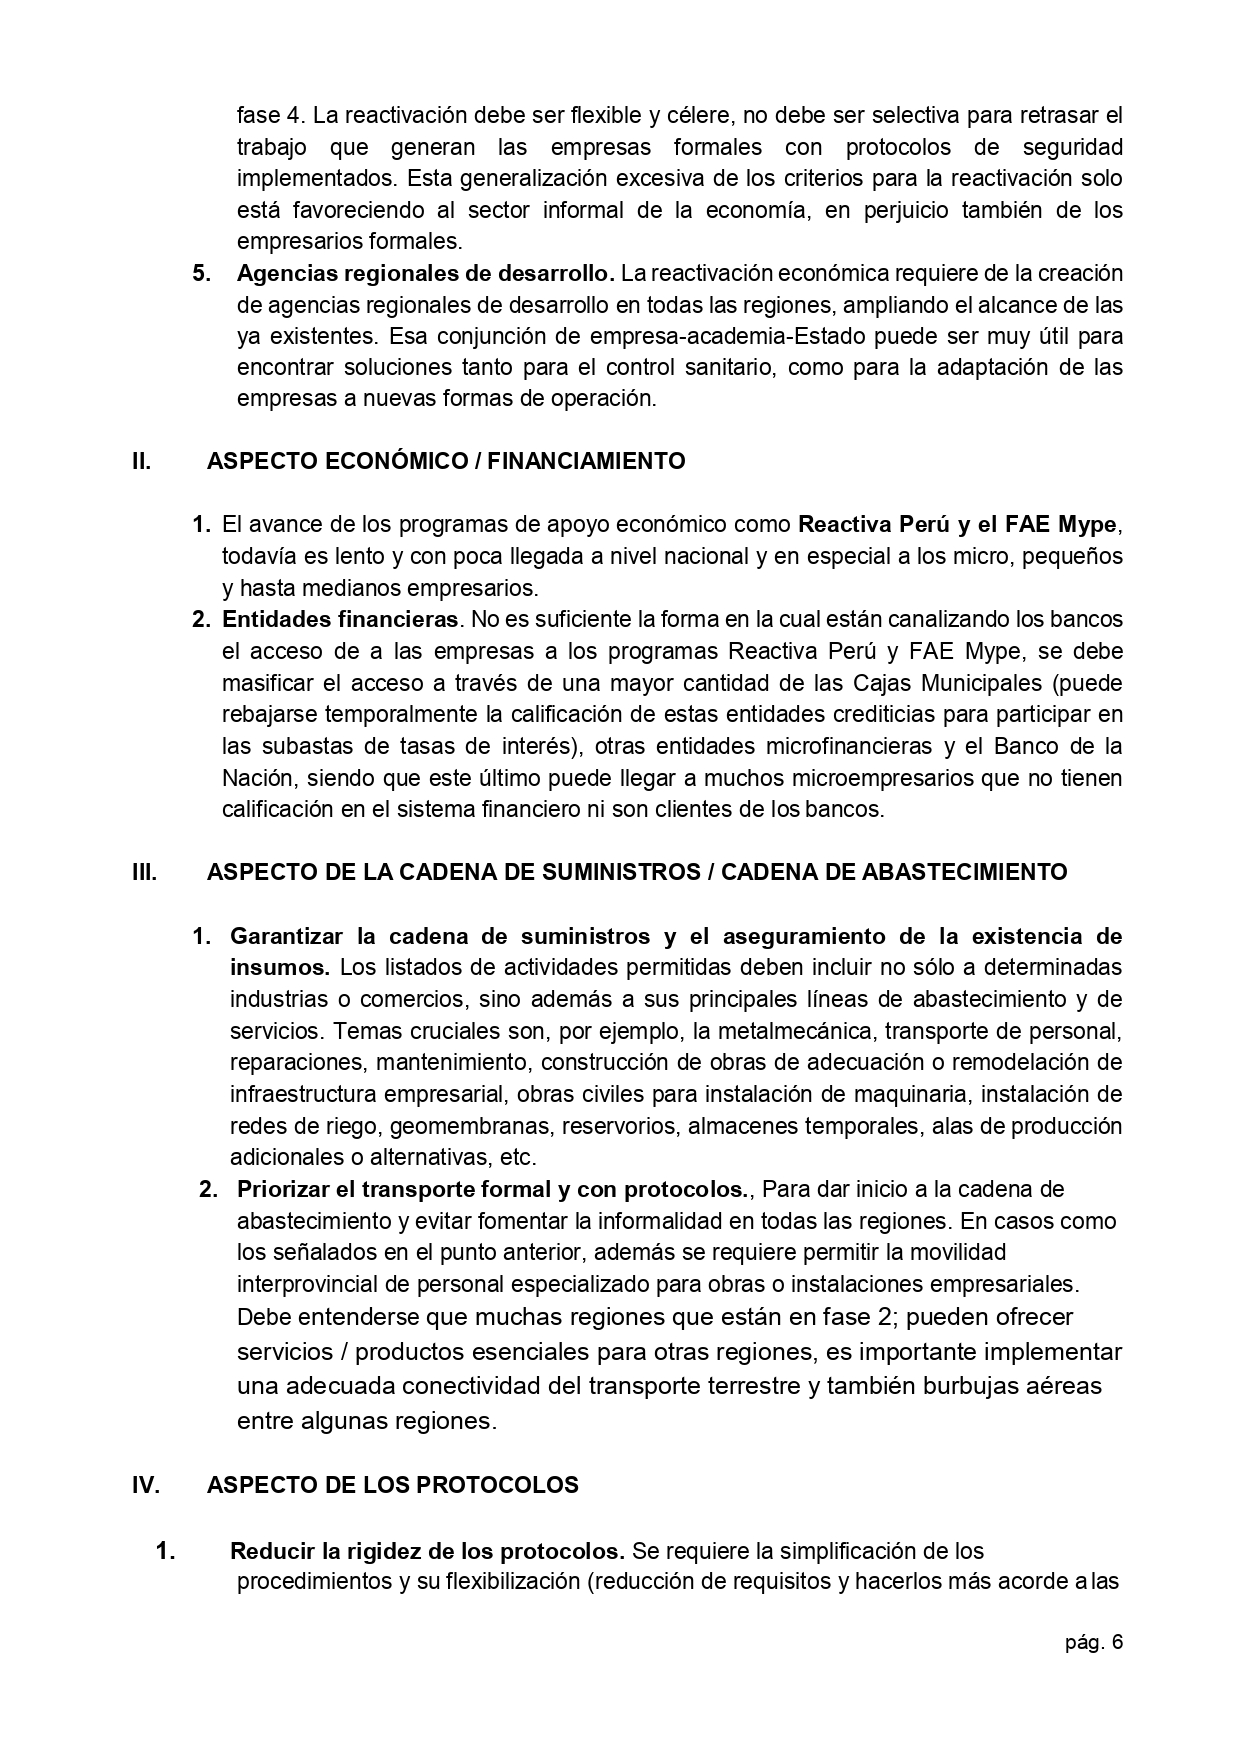 01.06.2020 Carta propuestas de cámaras para la reactivación económica  Presidencia page 0006